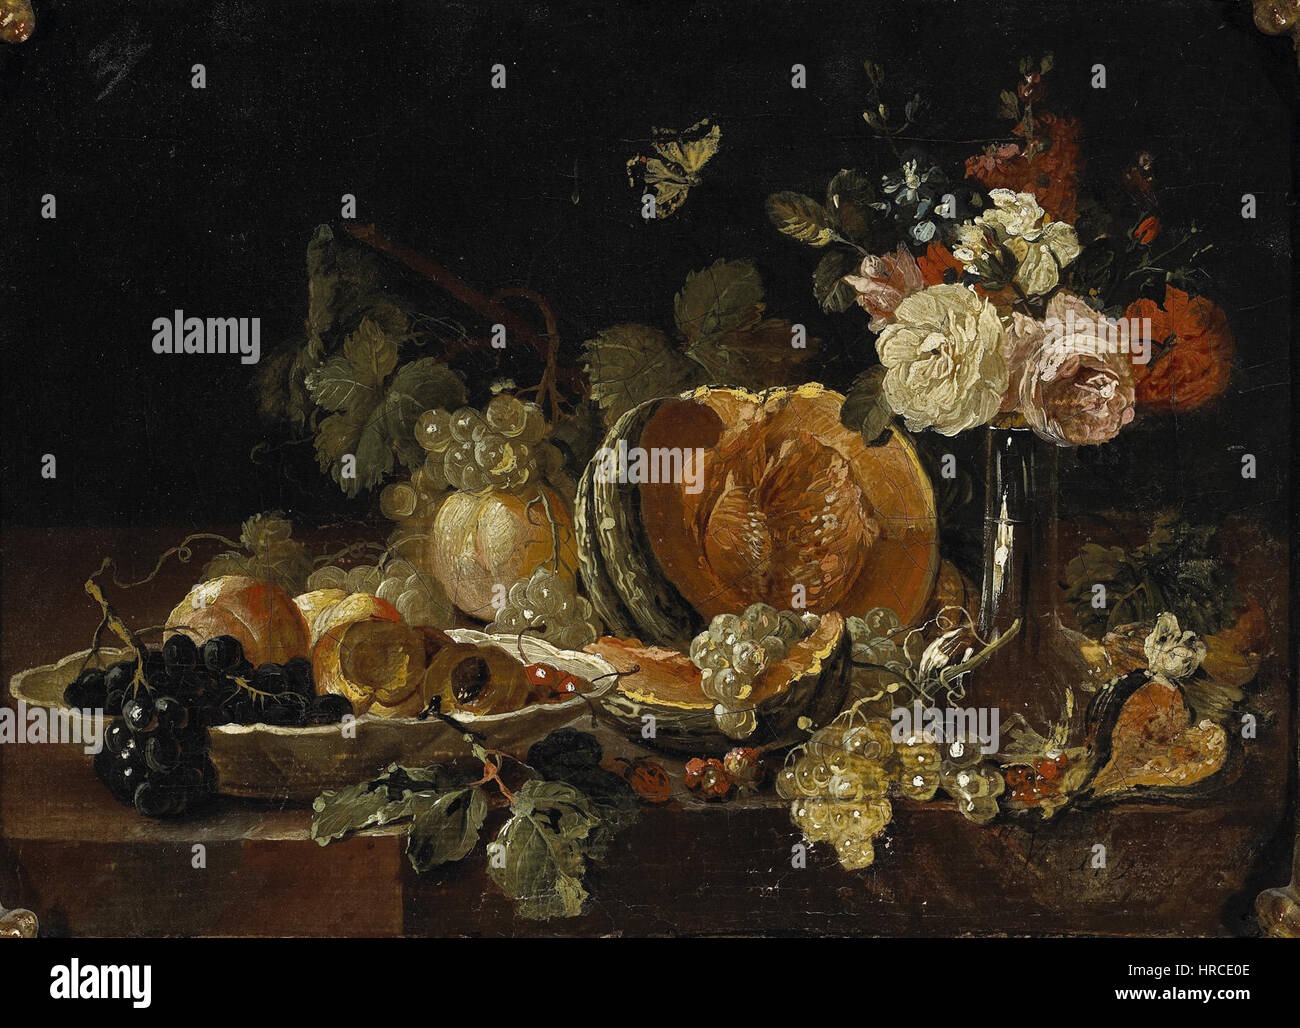 Johann Amandus Winck - Stilleben mit Blumen in einer Glasvase, einer Zitrone etc. Stock Photo